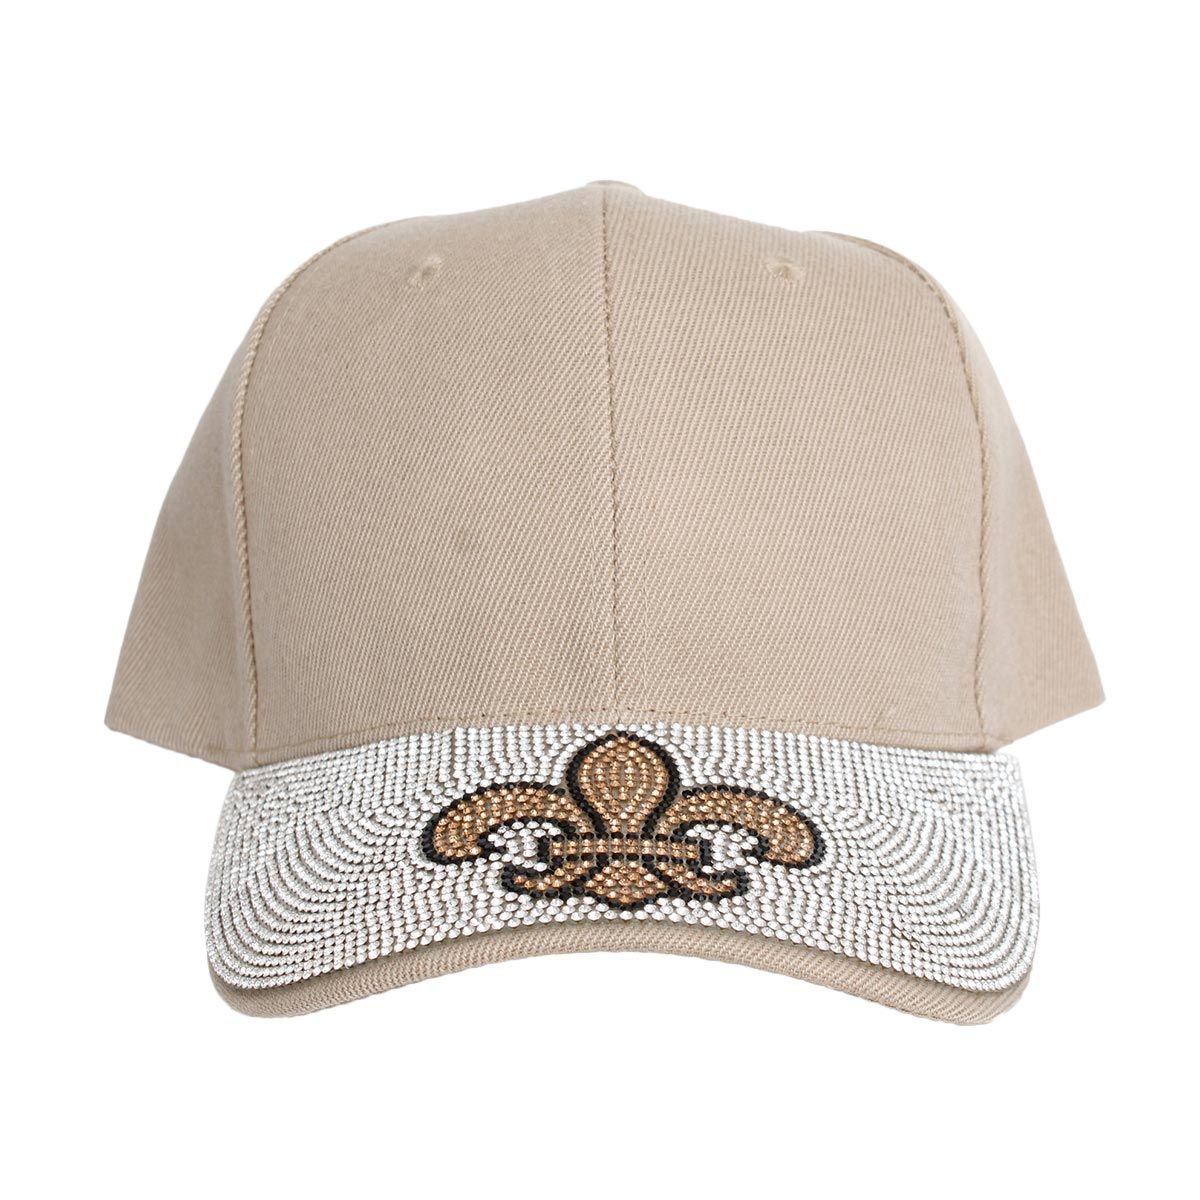 Hat Khaki Fleur de Lis Bling Baseball Cap Women - Premium Wholesale Fashion Accessories from Pinktown - Just $14! Shop now at chiquestyles